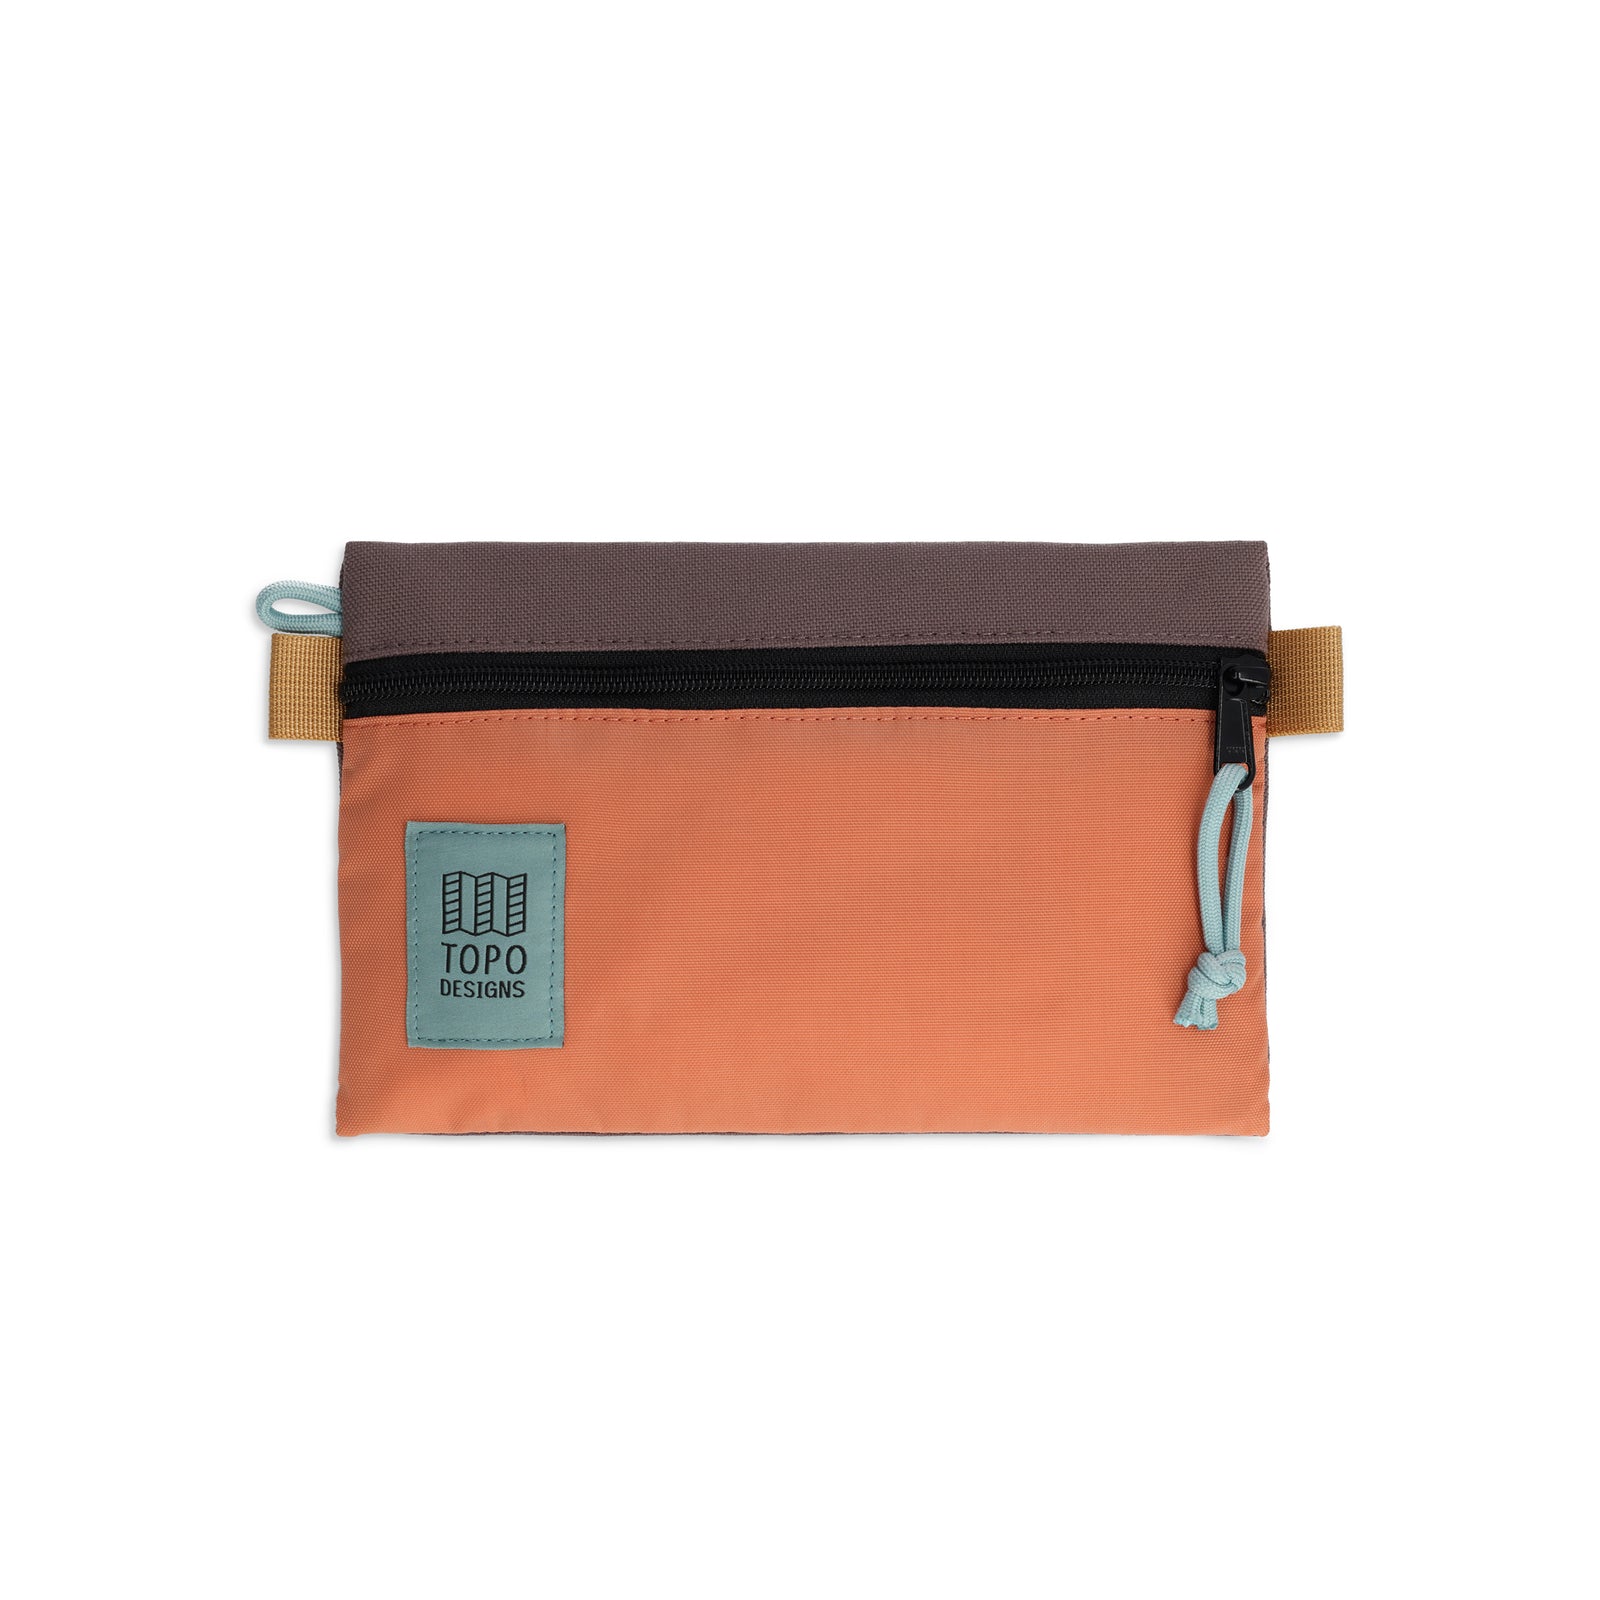 Topo Designs Accessory Bag small in "Coral / Peppercorn"